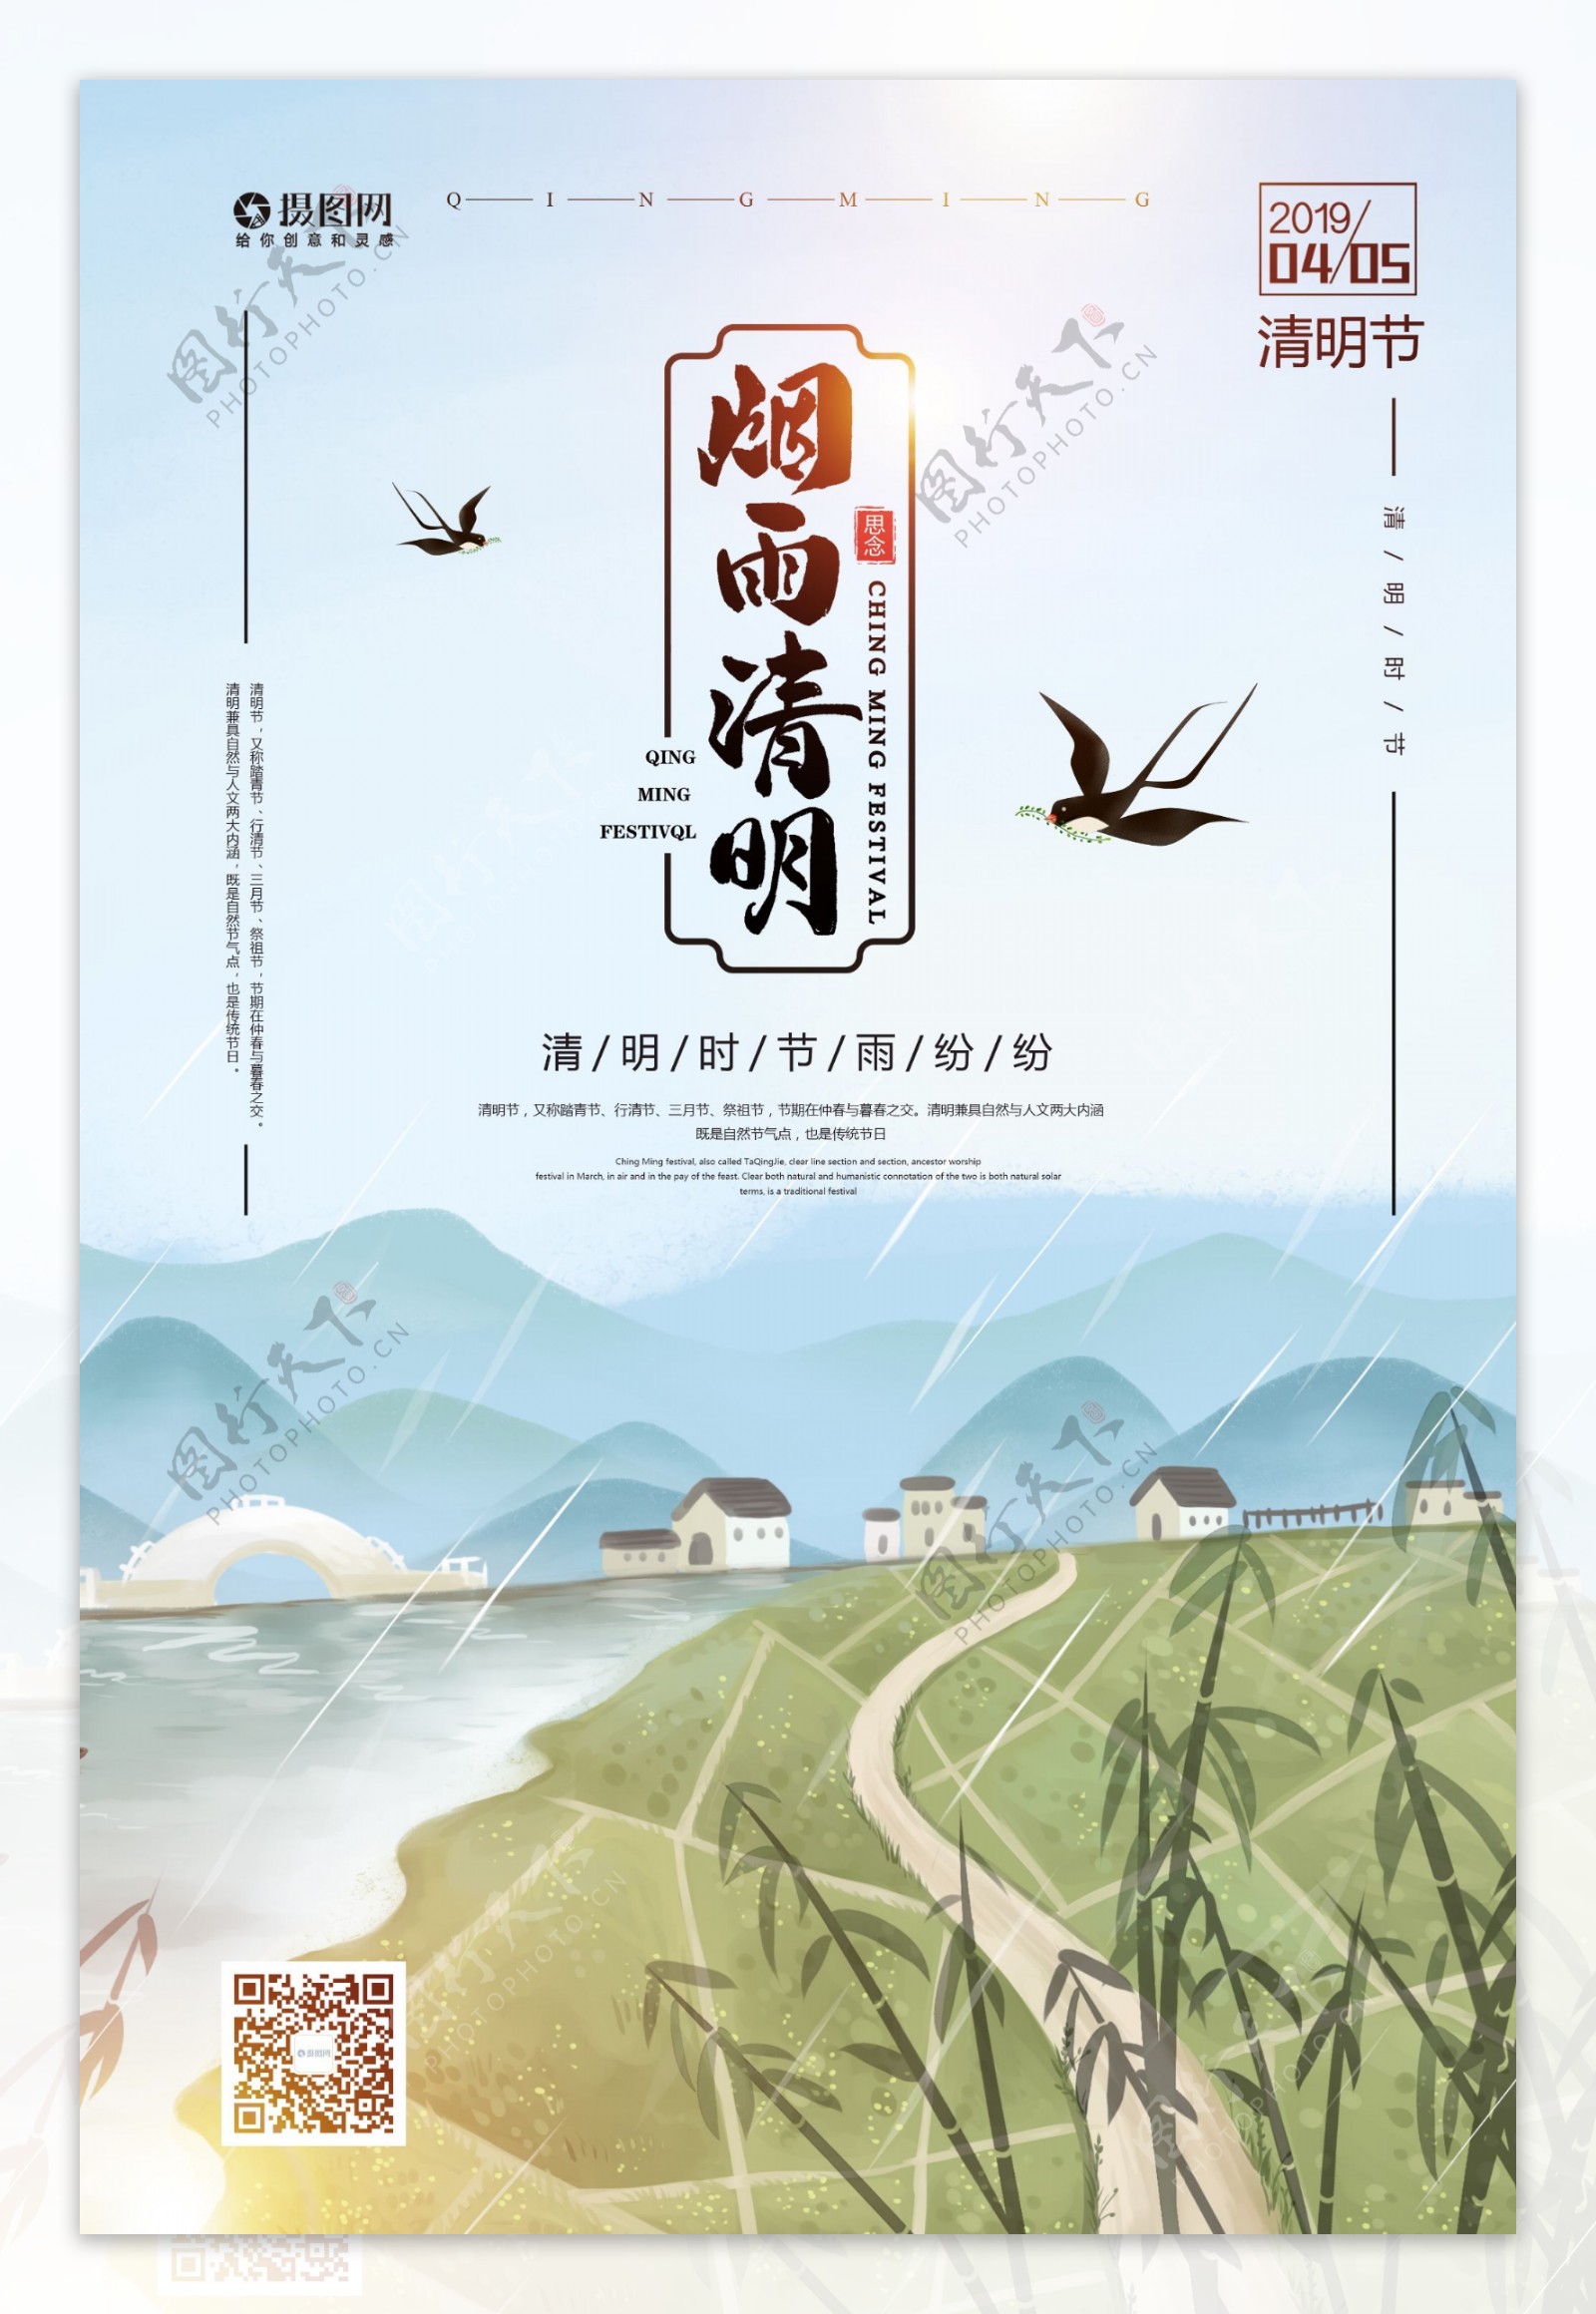 简约中国传统清明节海报